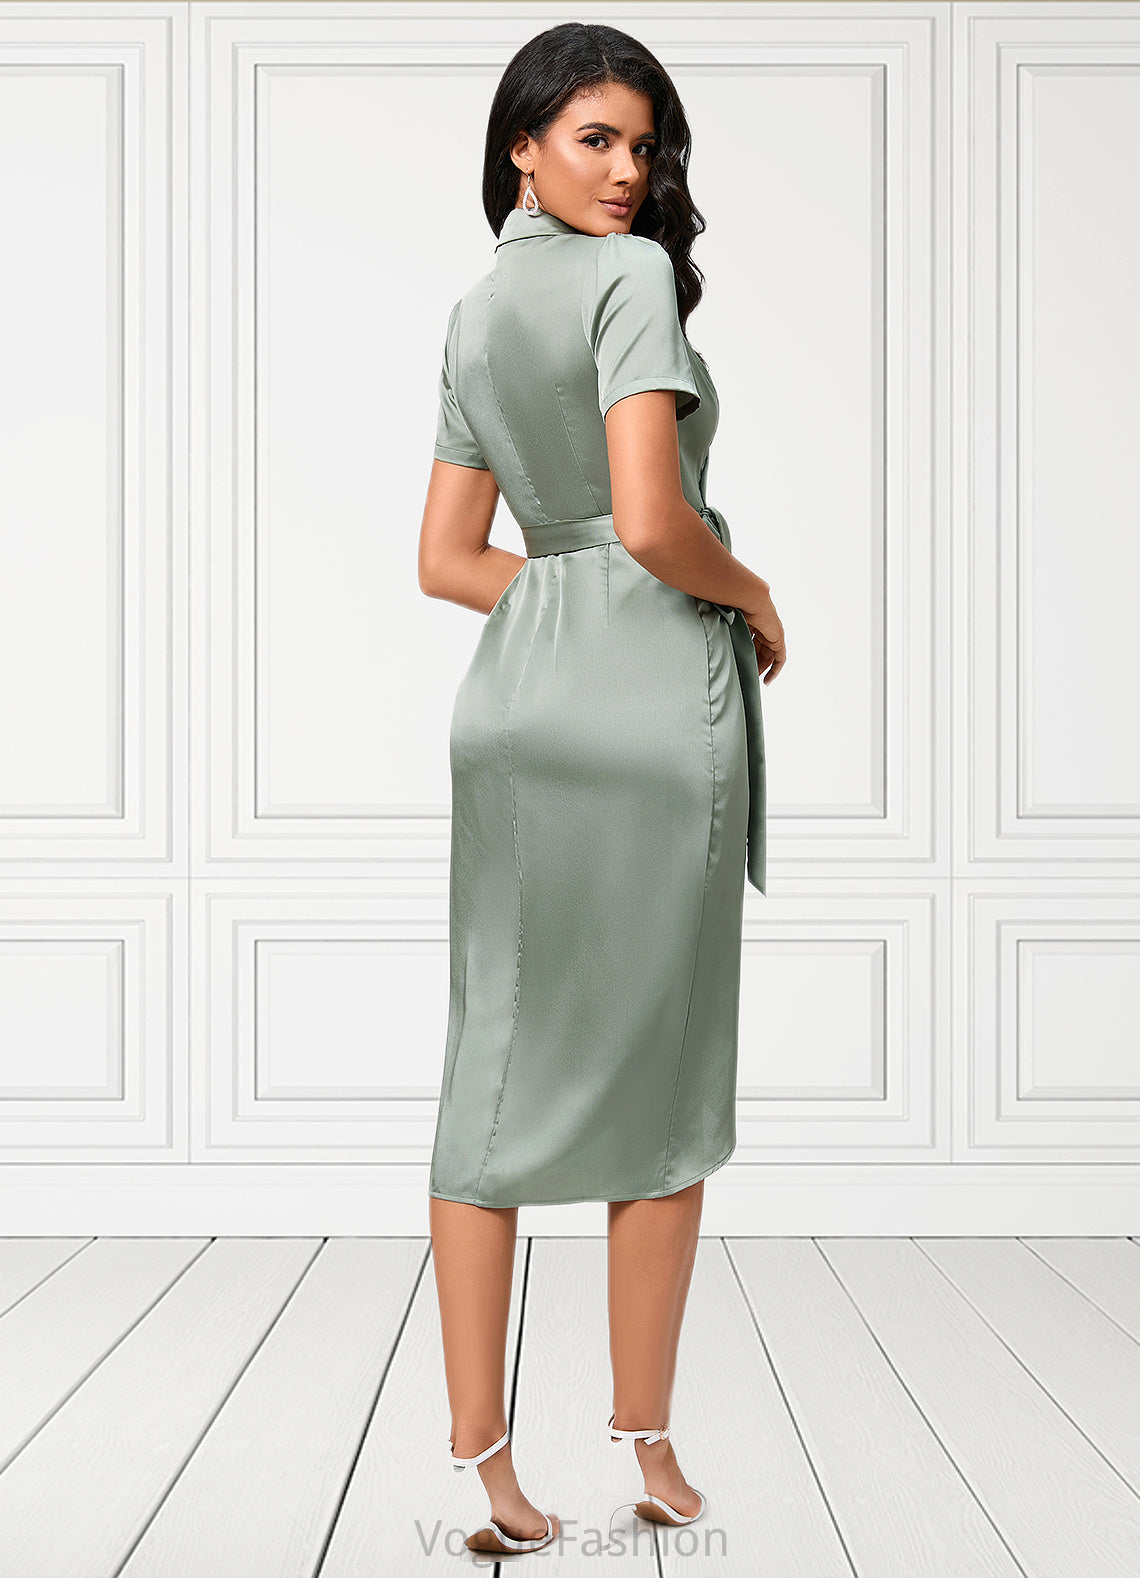 Anna Sheath/Column V-Neck Asymmetrical Satin Cocktail Dress With Bow DKP0022488